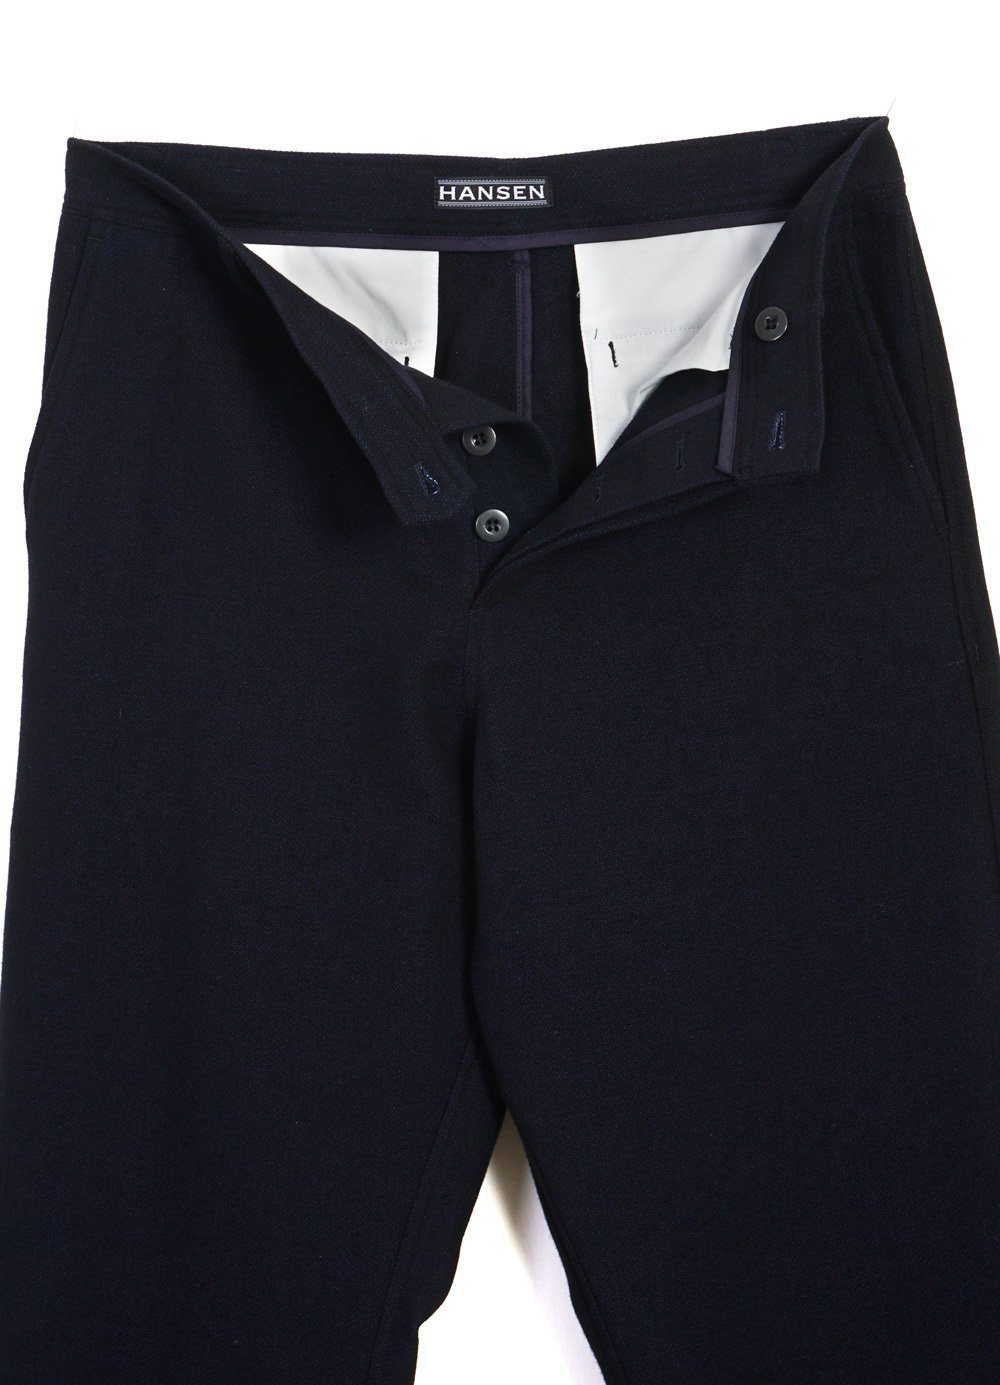 HANSEN Garments - KEN | Wide Cut Trousers | Deep Indigo - HANSEN Garments